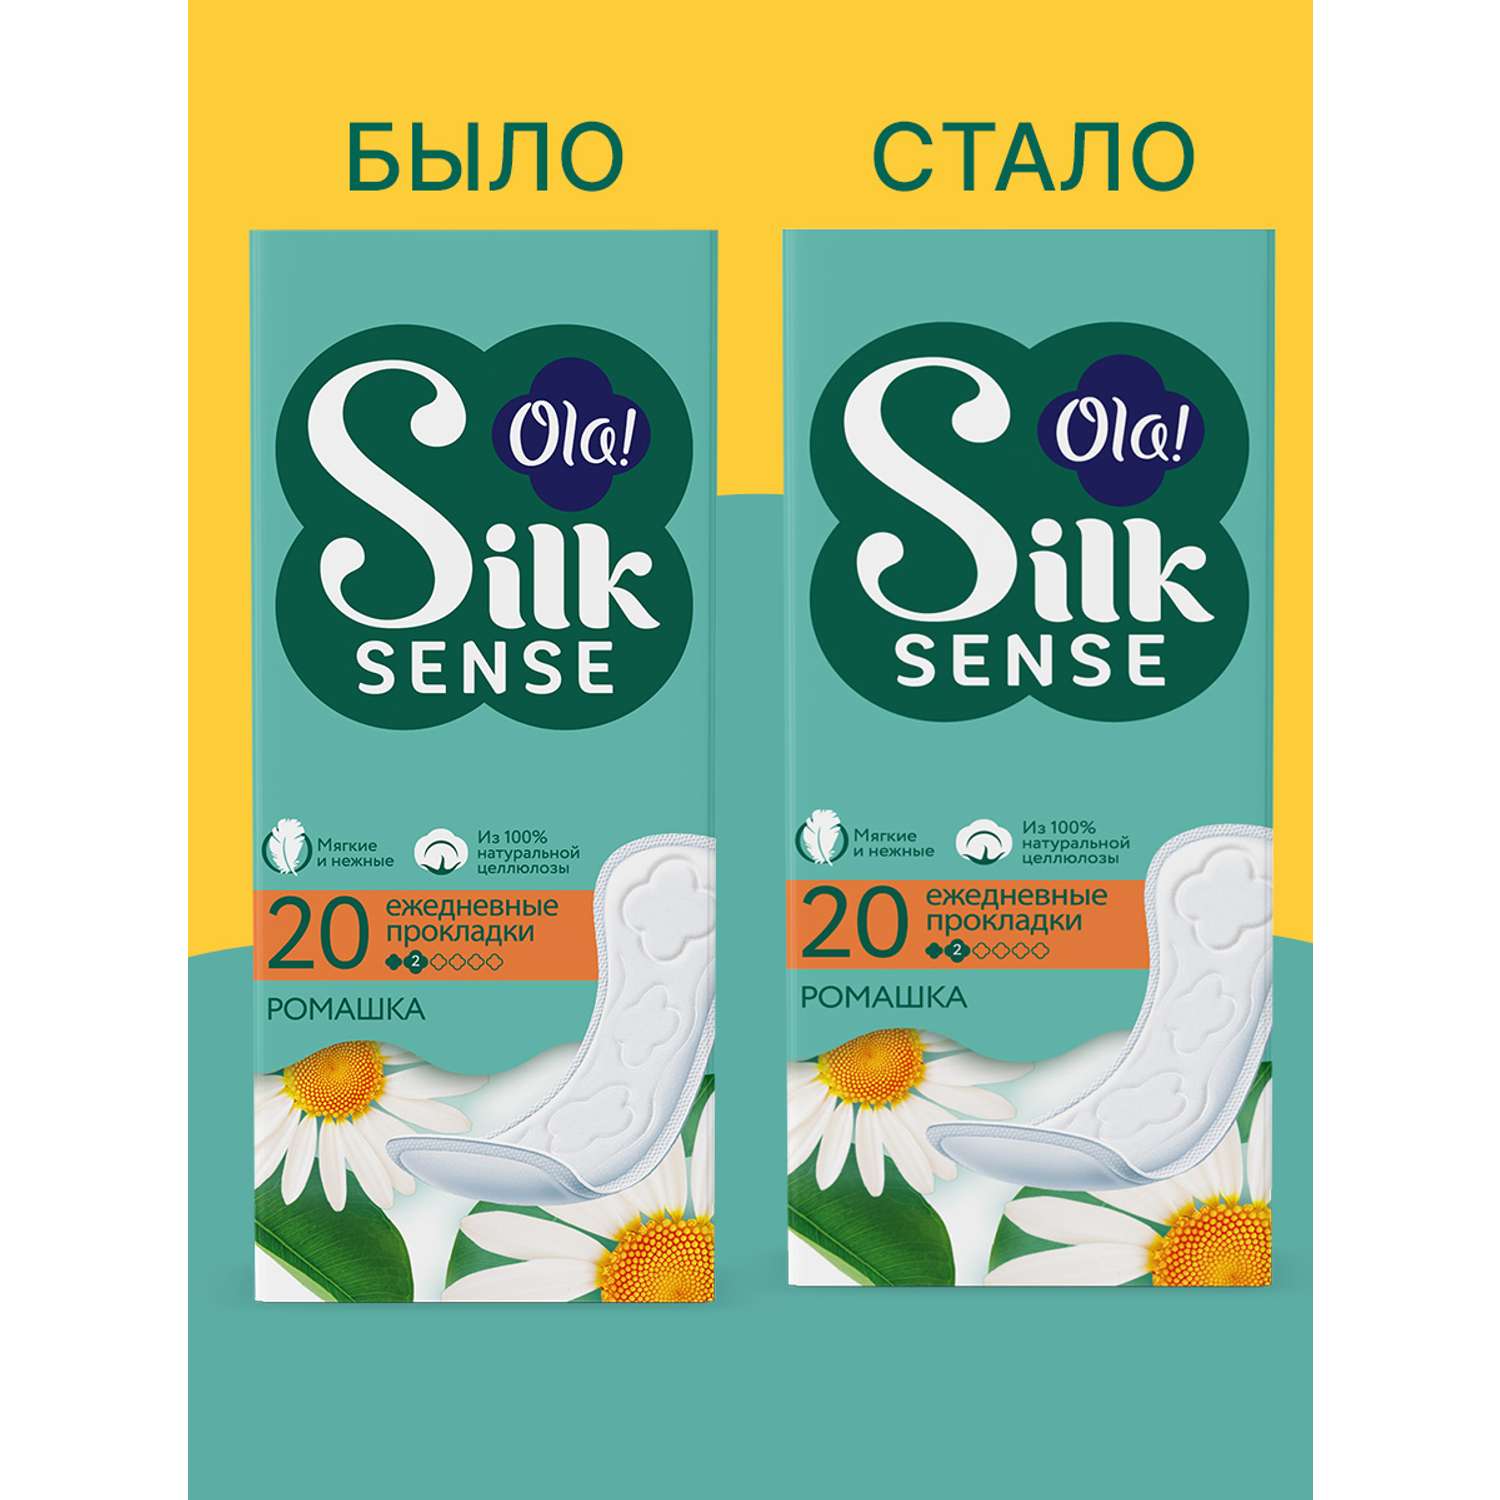 Ежедневные прокладки Ola! Silk Sense мягкие аромат Ромашка 20 шт - фото 6